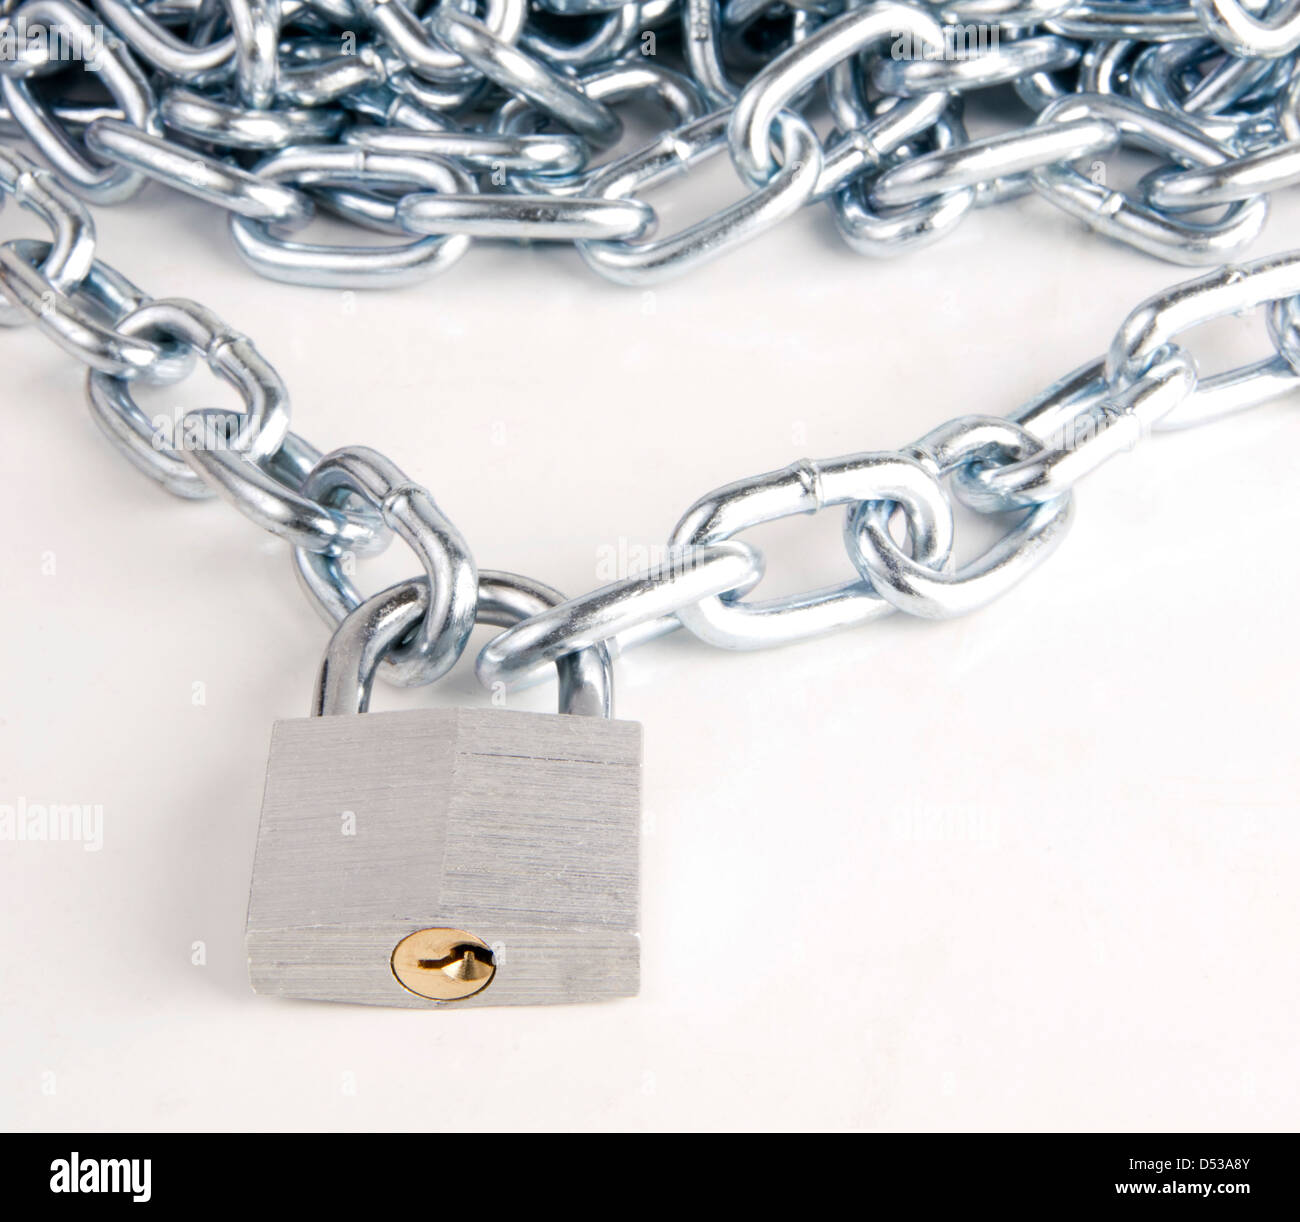 Collegamento a catena collegata mediante chiavi di bloccaggio in acciaio lucchetto su bianco Foto Stock